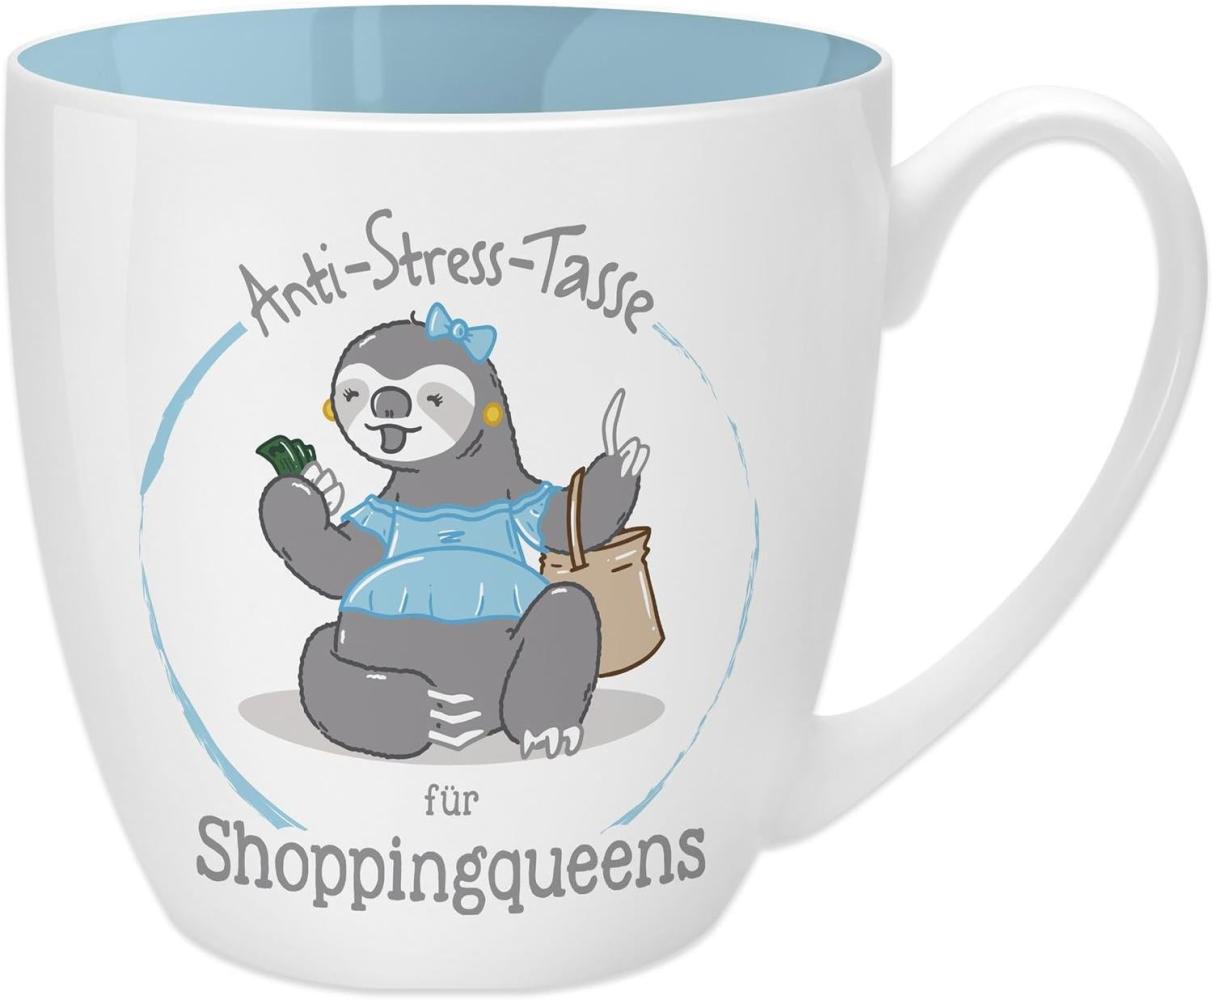 GRUSS & CO Anti-Stress-Tasse Motiv "Shoppingqueen" | Tasse mit Spruch, 45 cl, New Bone China | Geschenk lustig | 45521 Bild 1